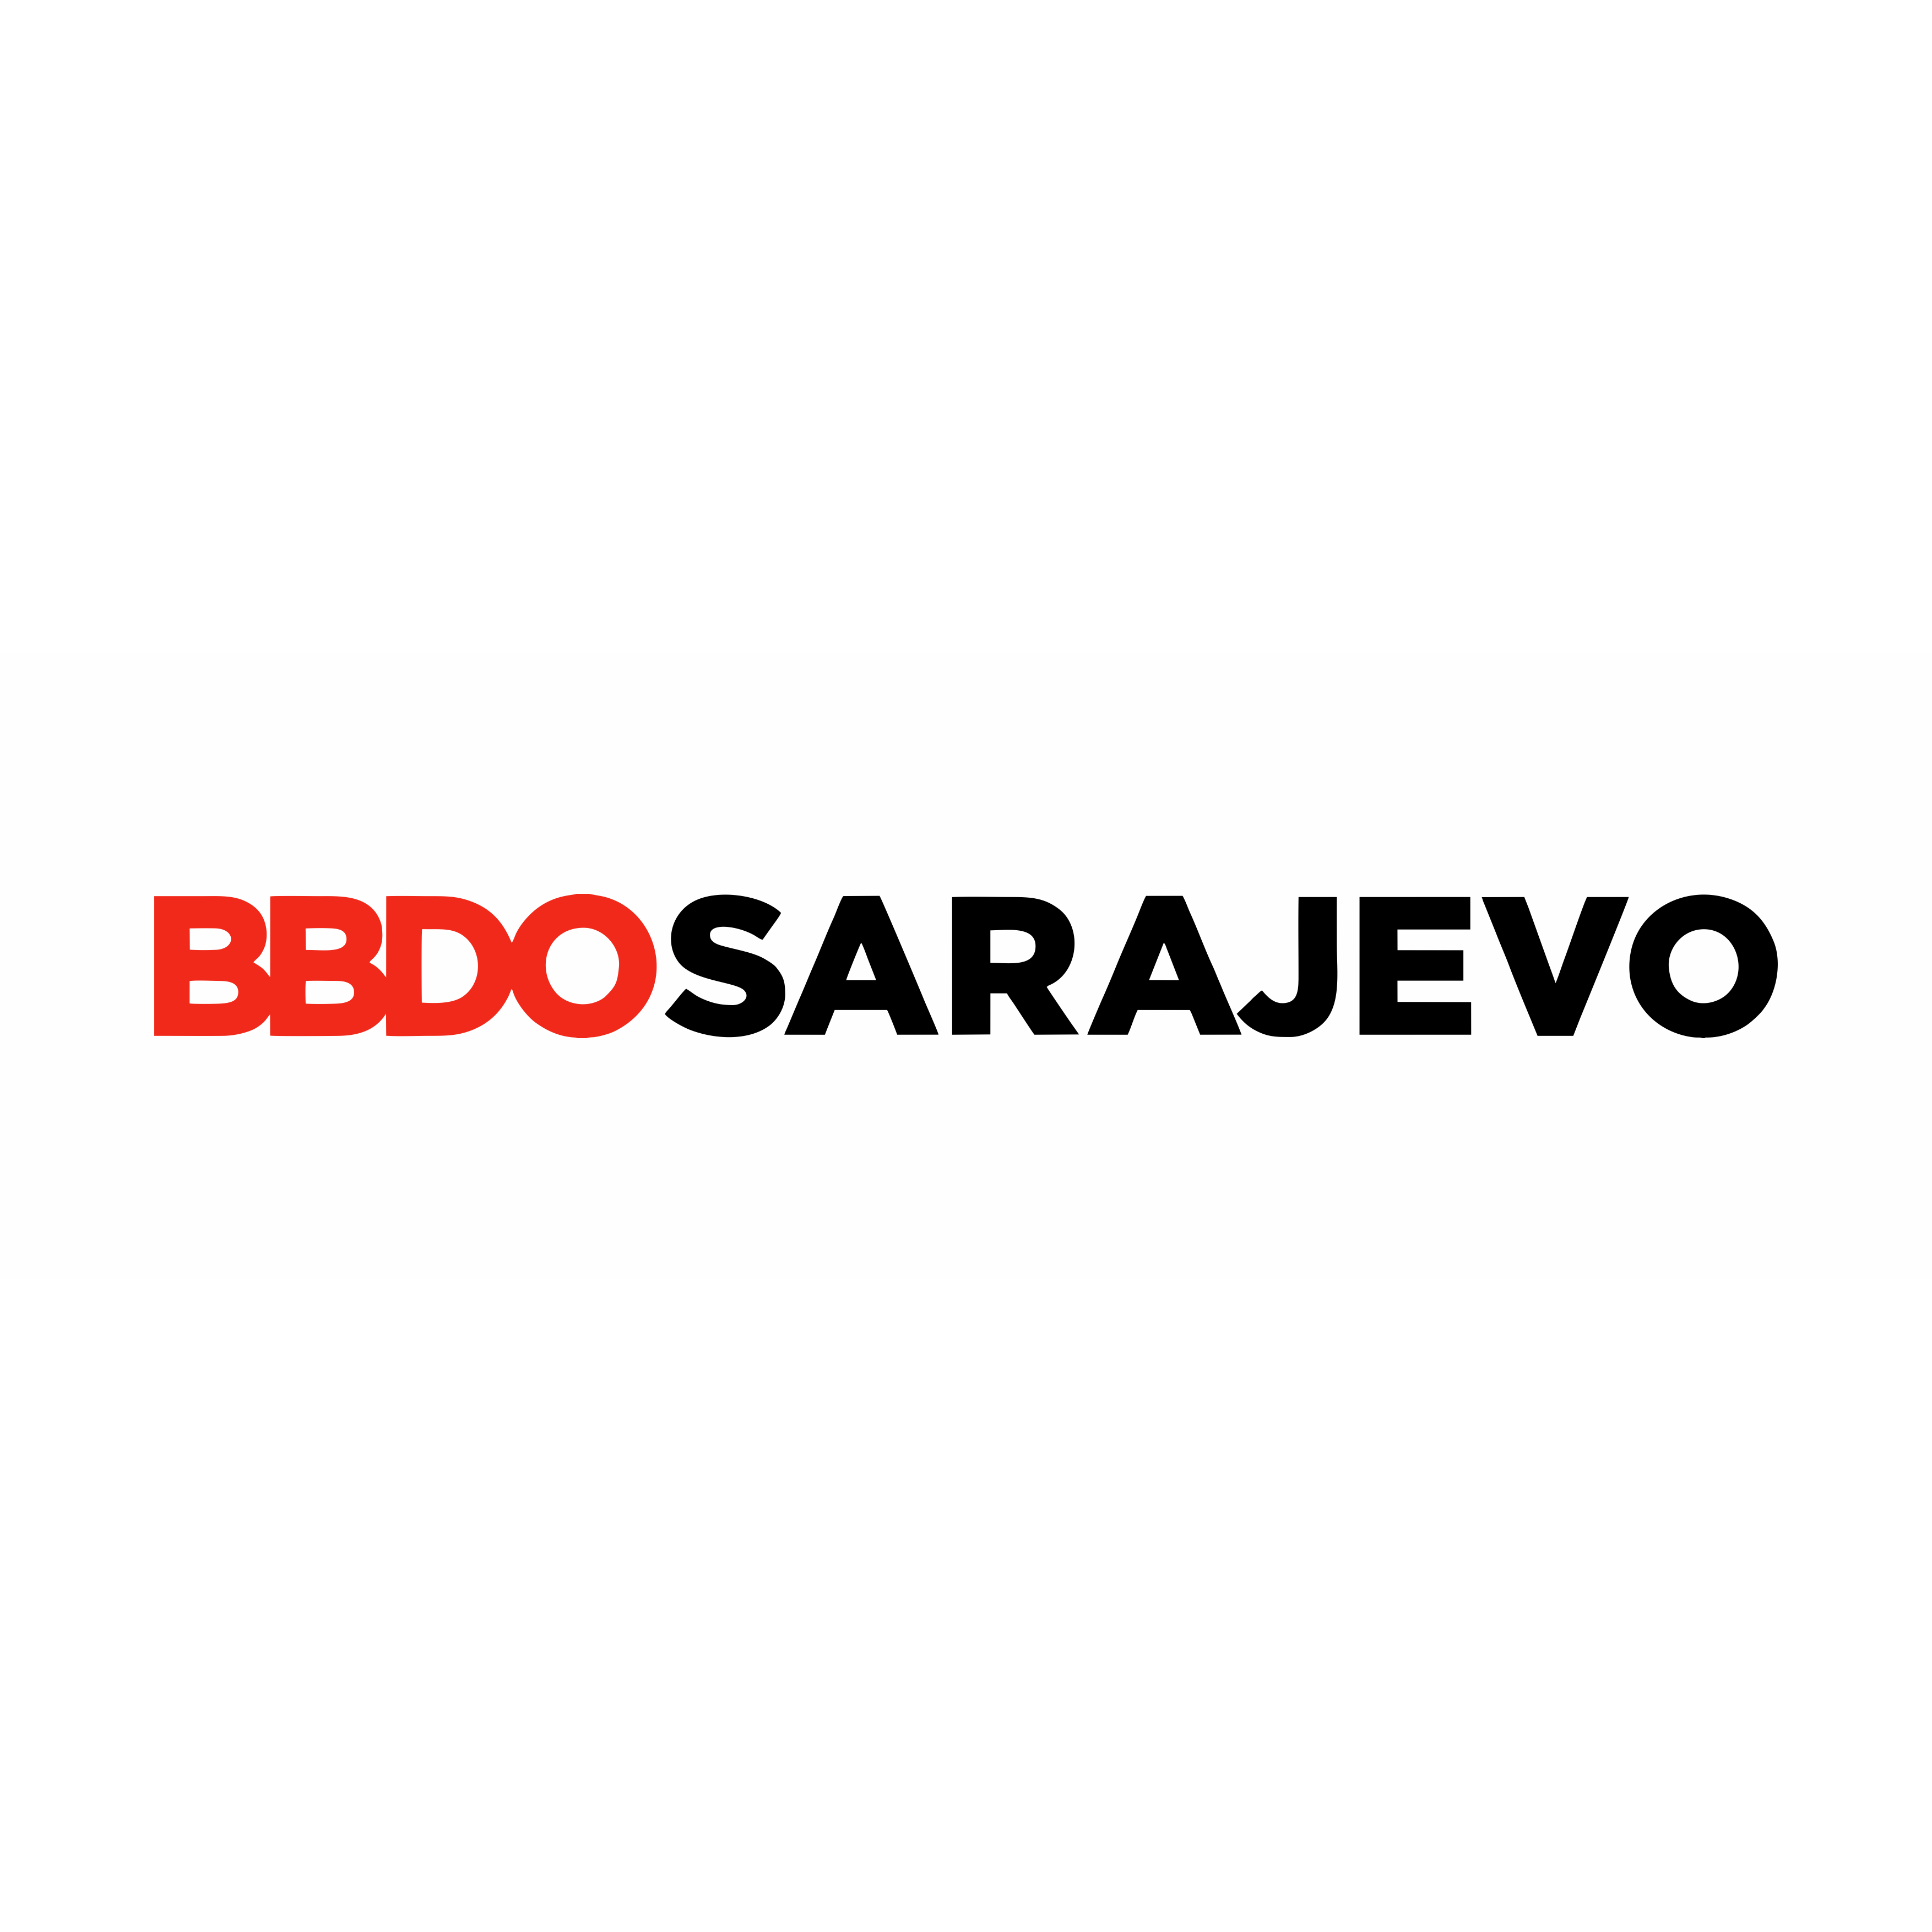 BBDO Sarajevo